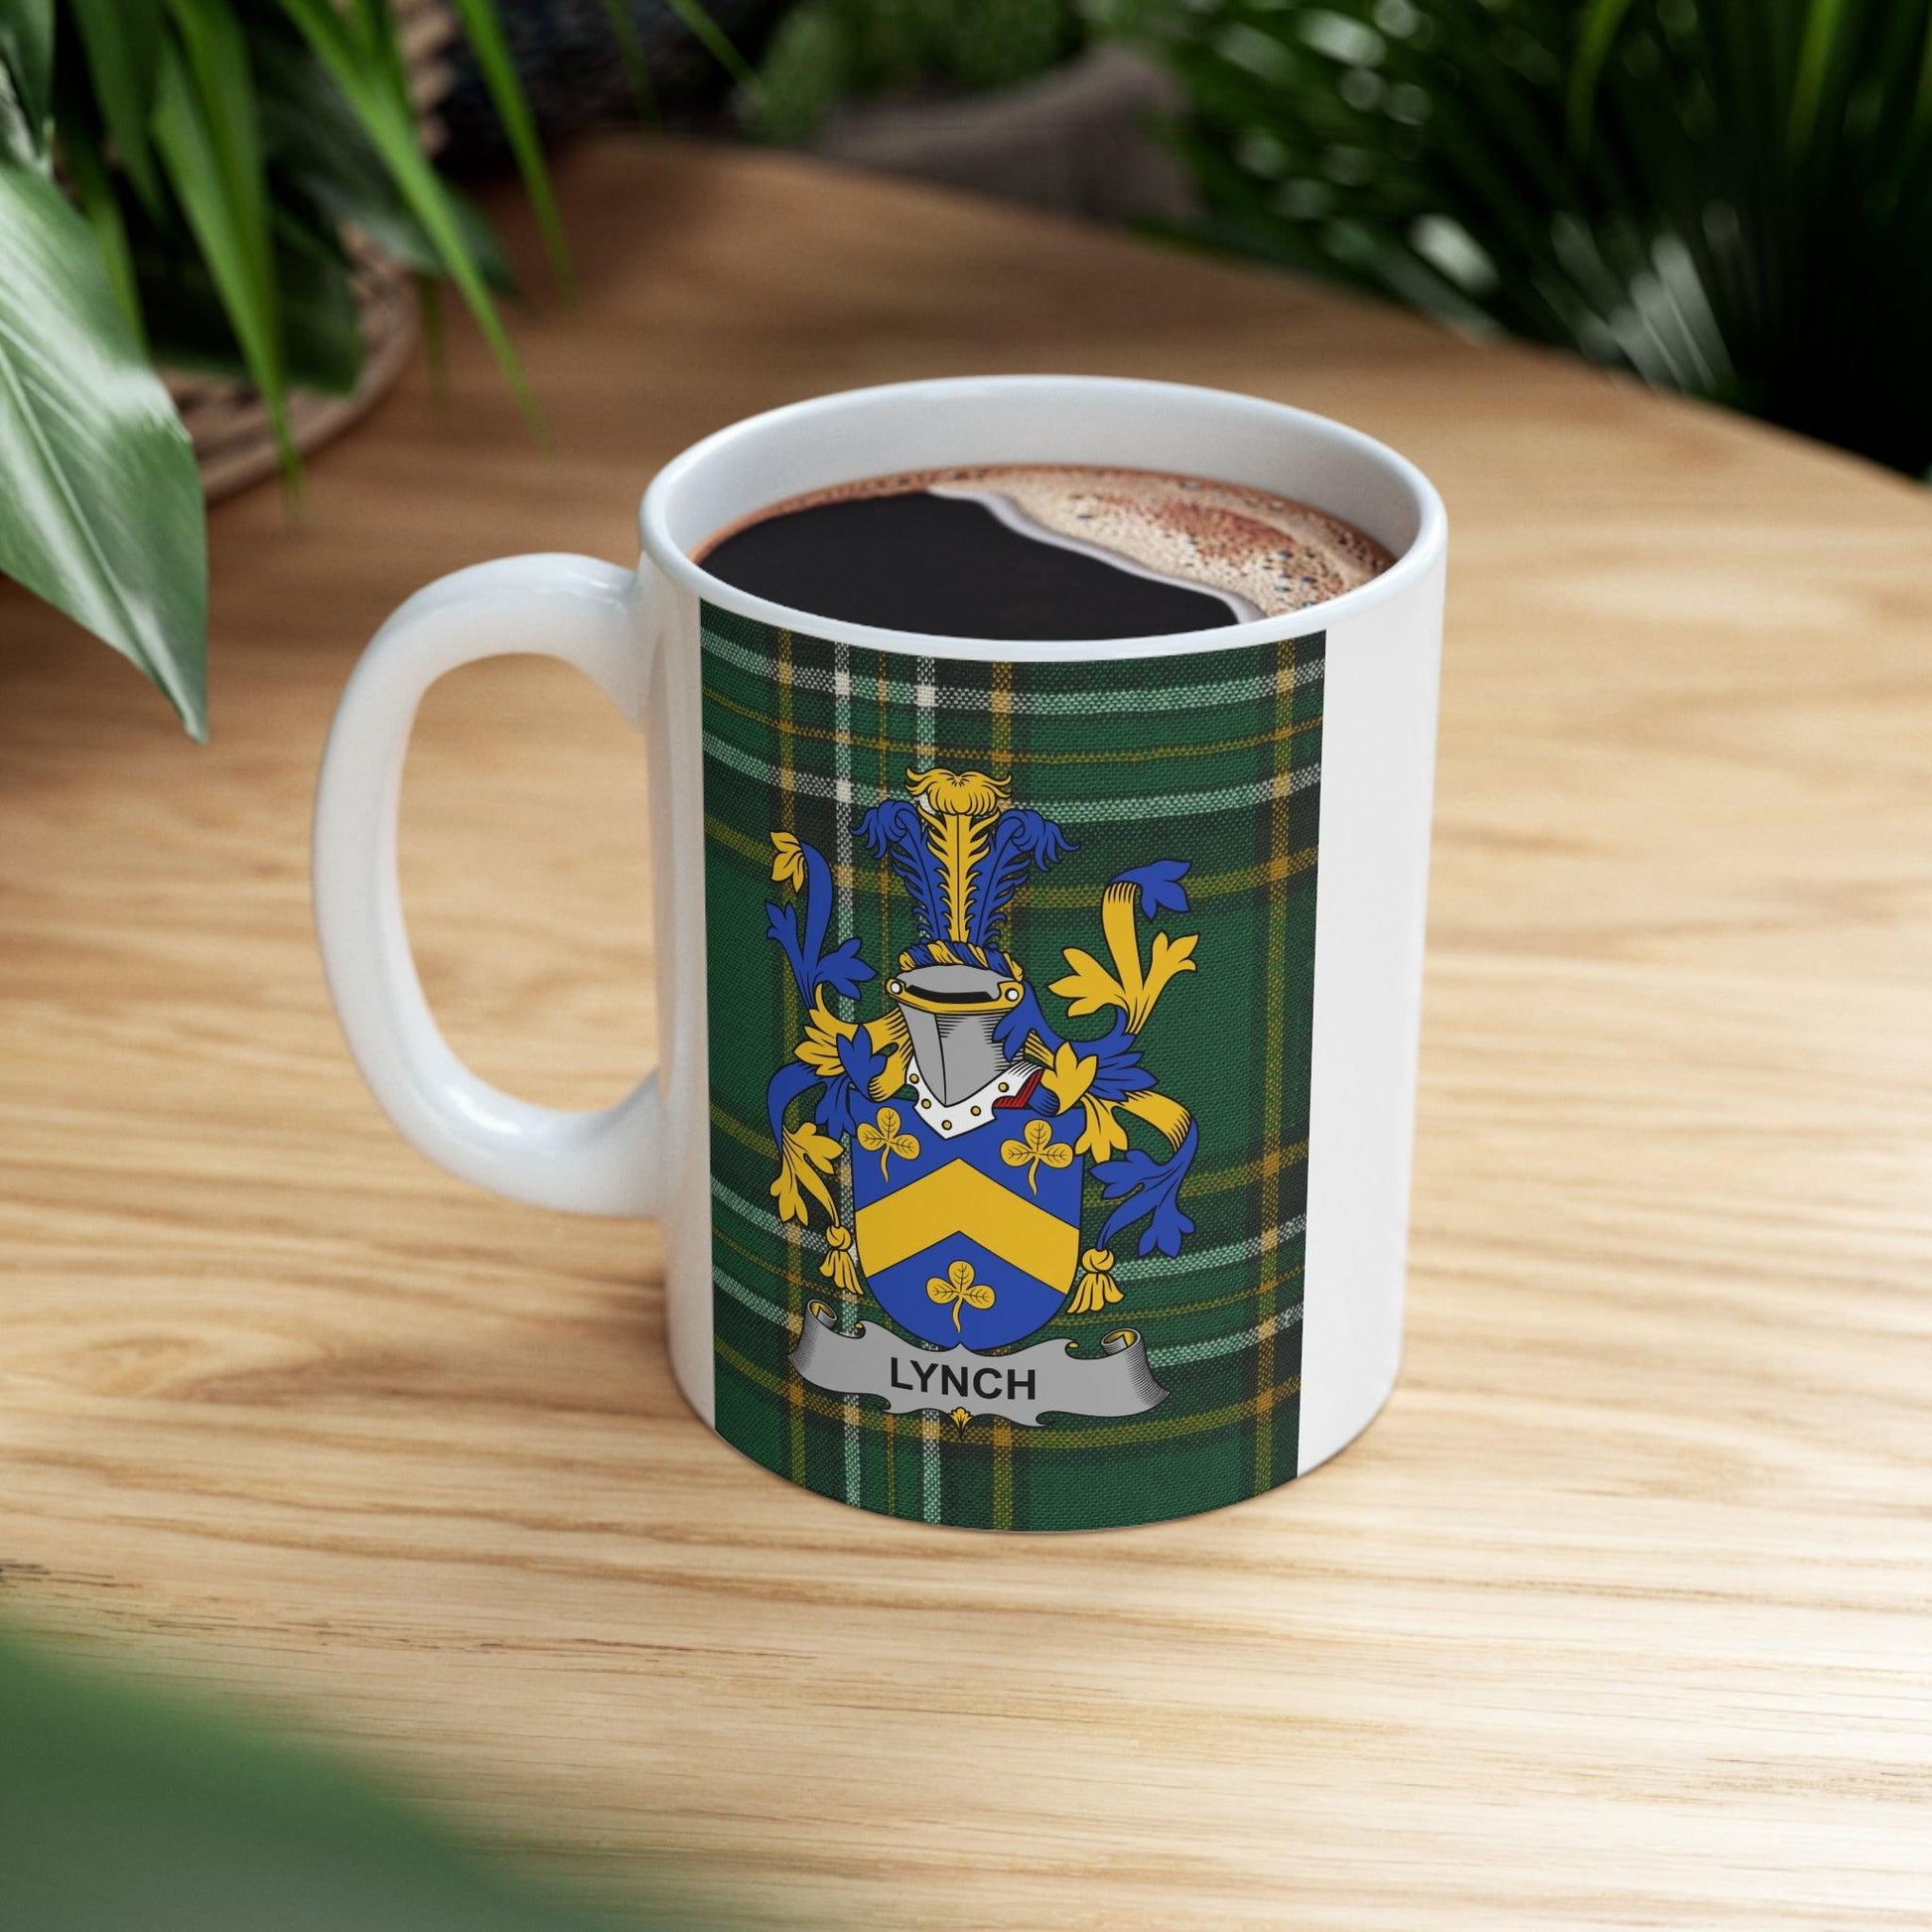 Lynch Coat Of Arms Irish Mug